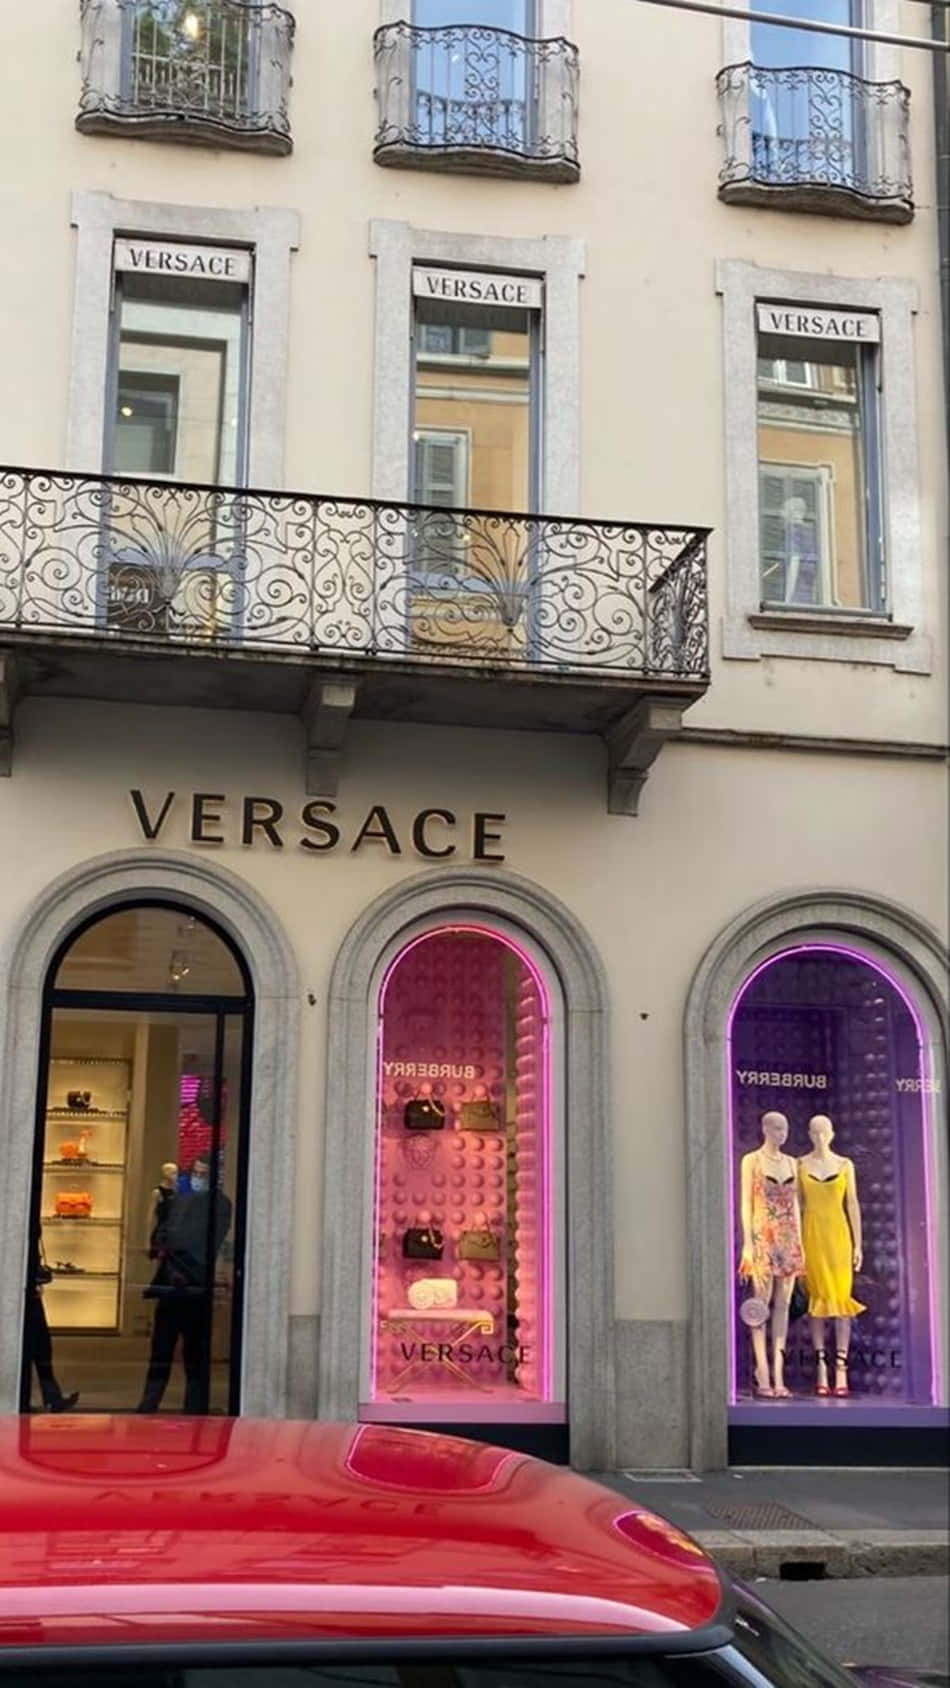 Versace - en butik med en rød bil foran Wallpaper